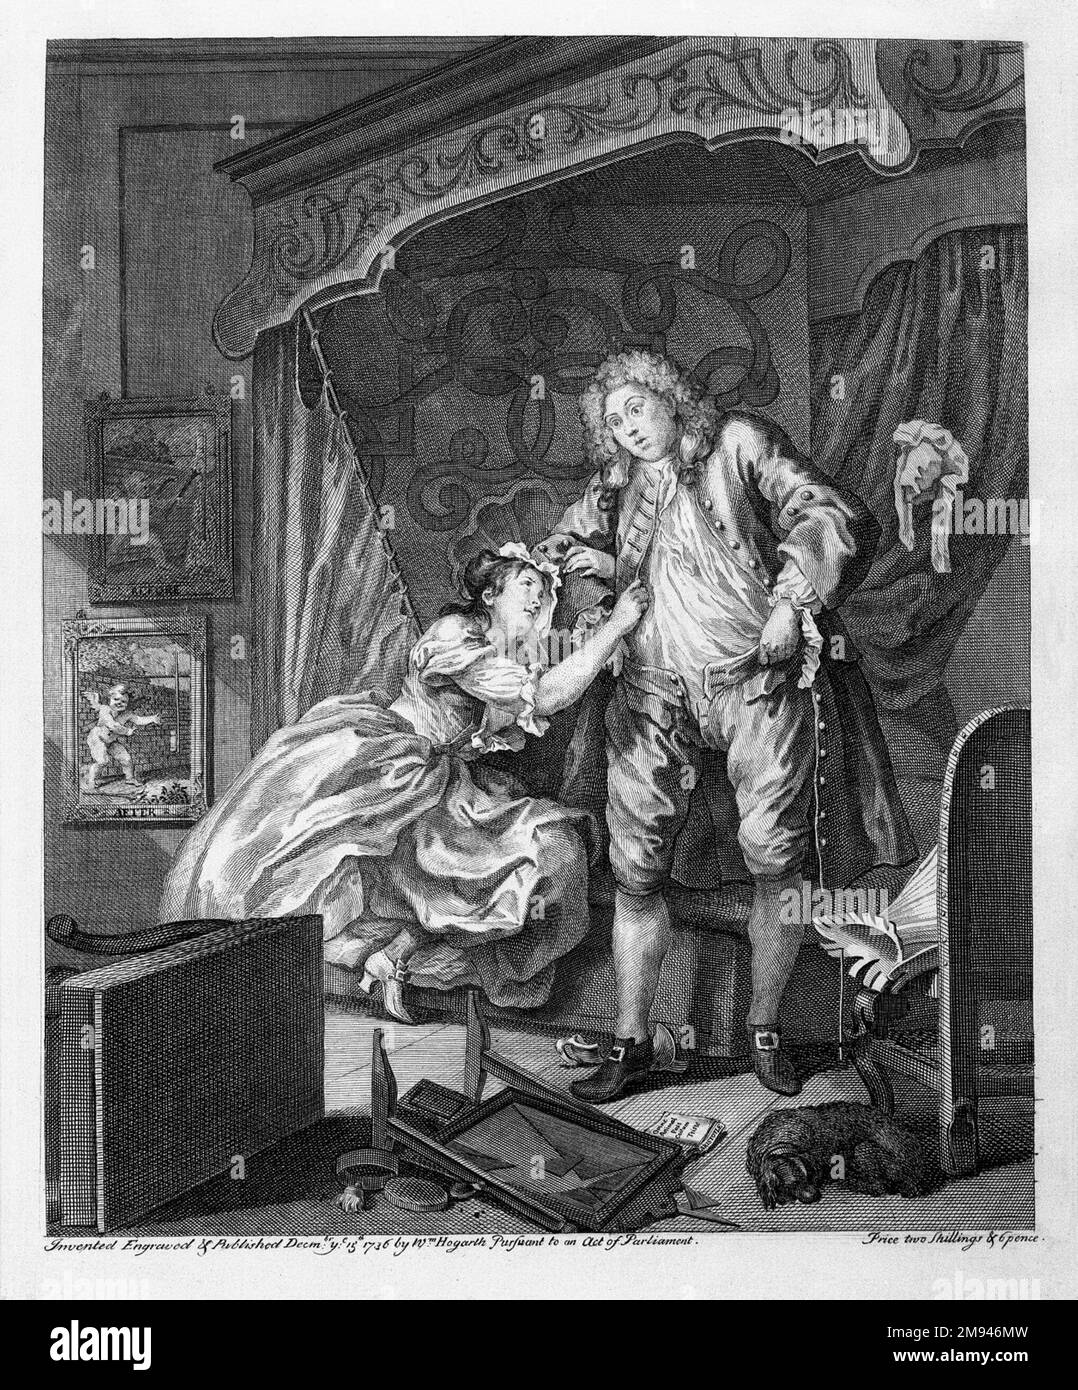 Après William Hogarth (britannique, 1697-1764). 1736. Gravure sur papier à poser, 15 15/16 x 12 7/8 po. (40,5 x 32,7 cm). Art européen 1736 Banque D'Images